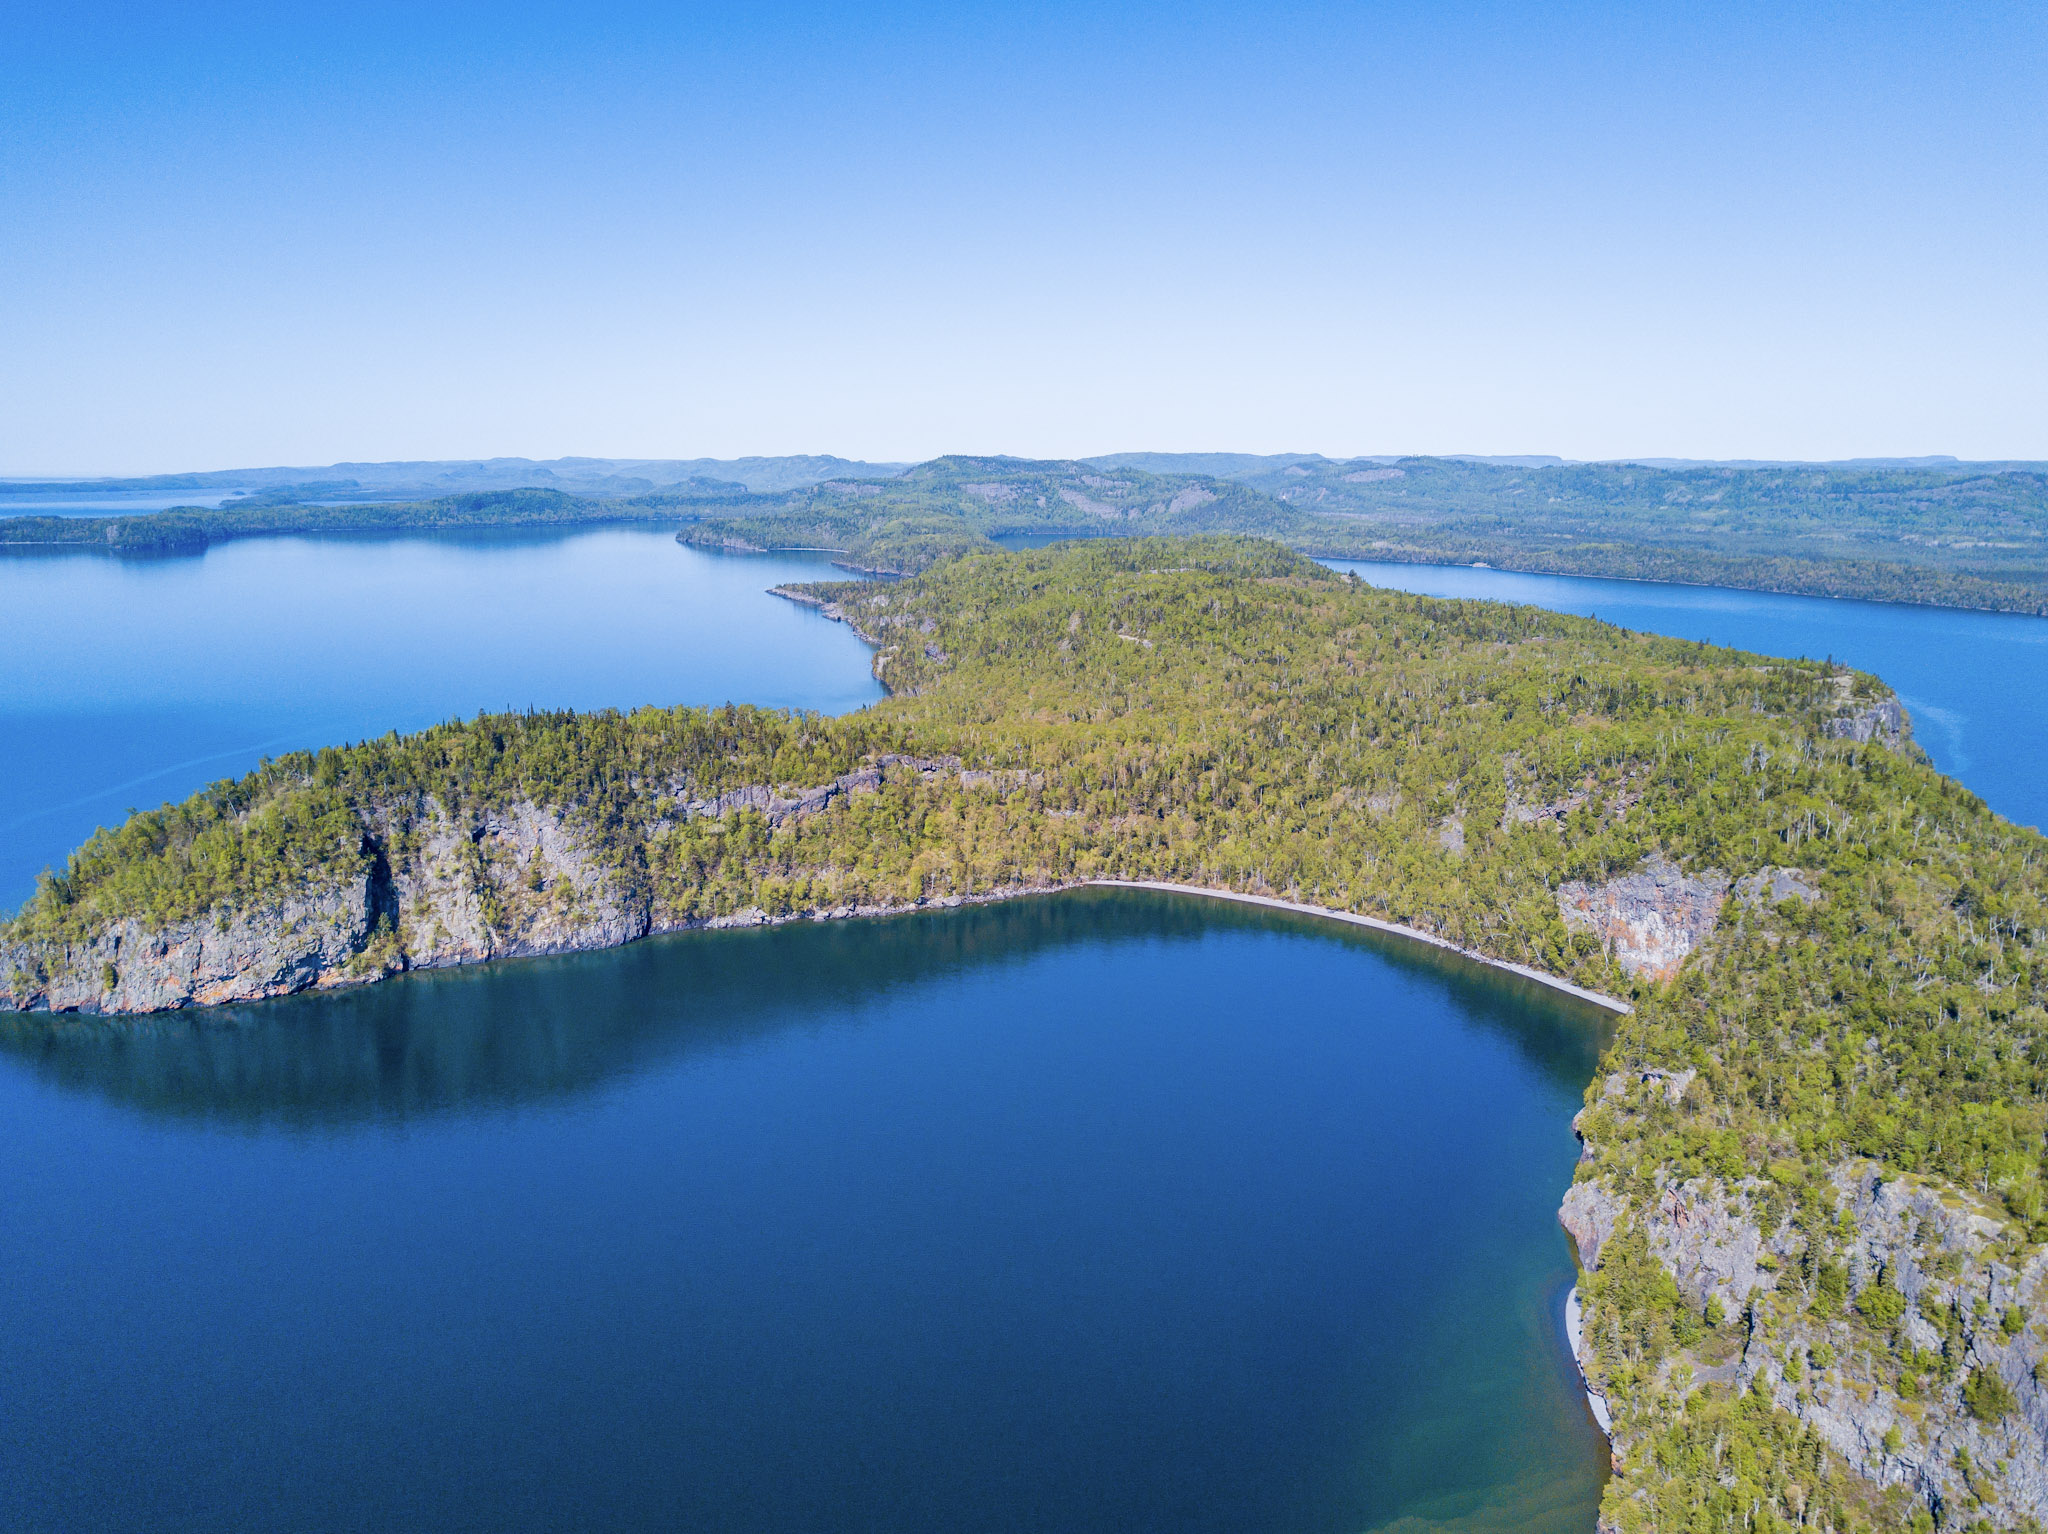 Через какое озеро была. Озеро Гурон Северная Америка. Озеро Супериор США. Озеро сьюпериор Канада. Верхнее (Lake Superior) — озеро.